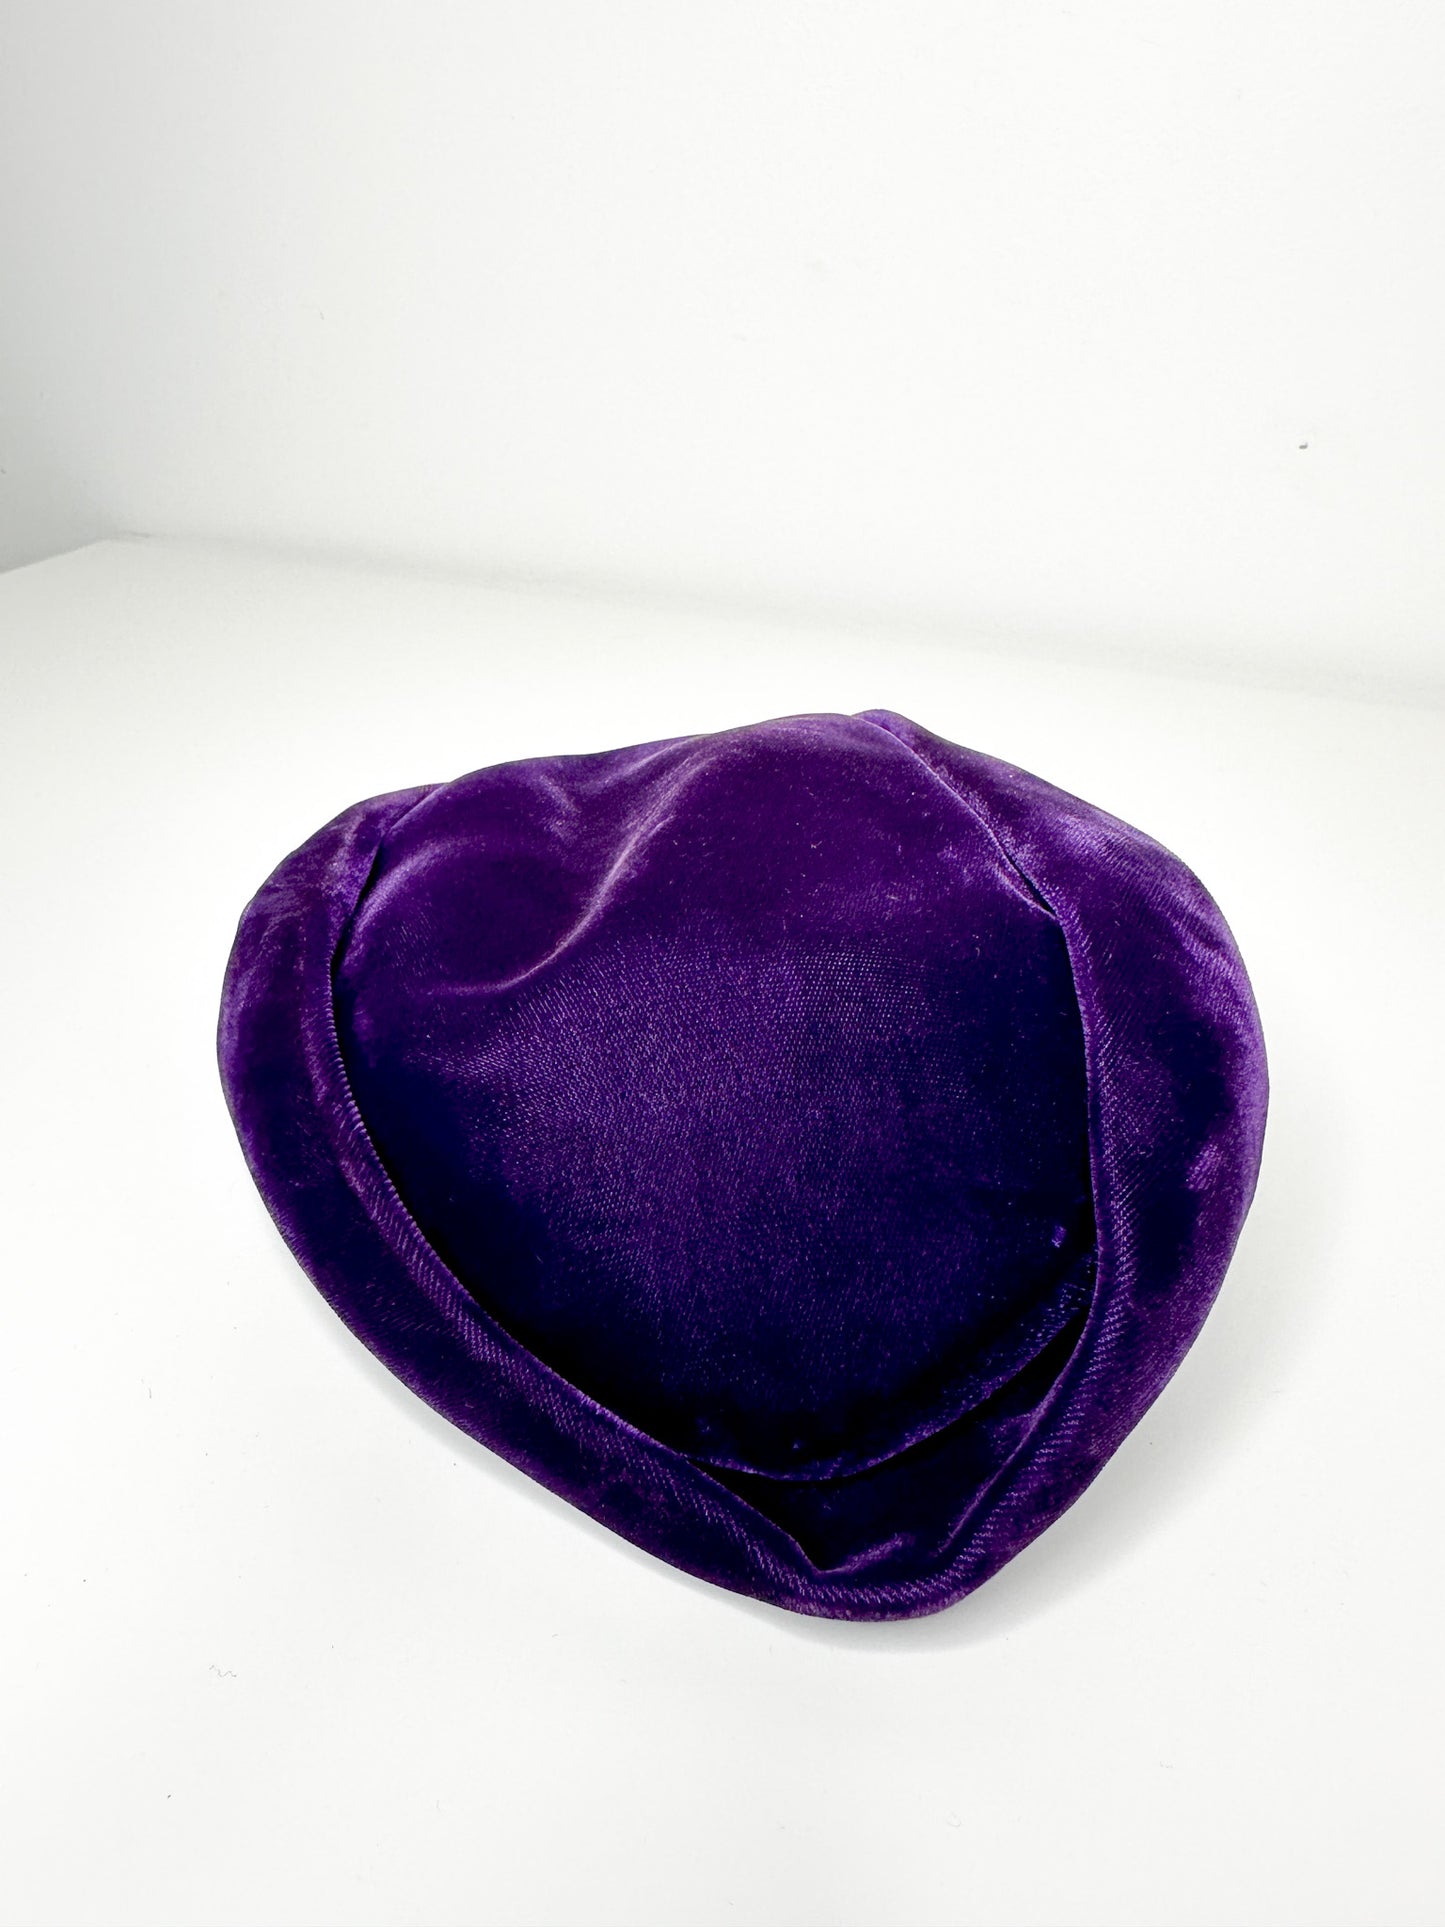 Vintage 1940s Purple Velvet Fascinator | Vintage Fascinator | 1940s Hat | Wedding Hat| Race Track Fascinator